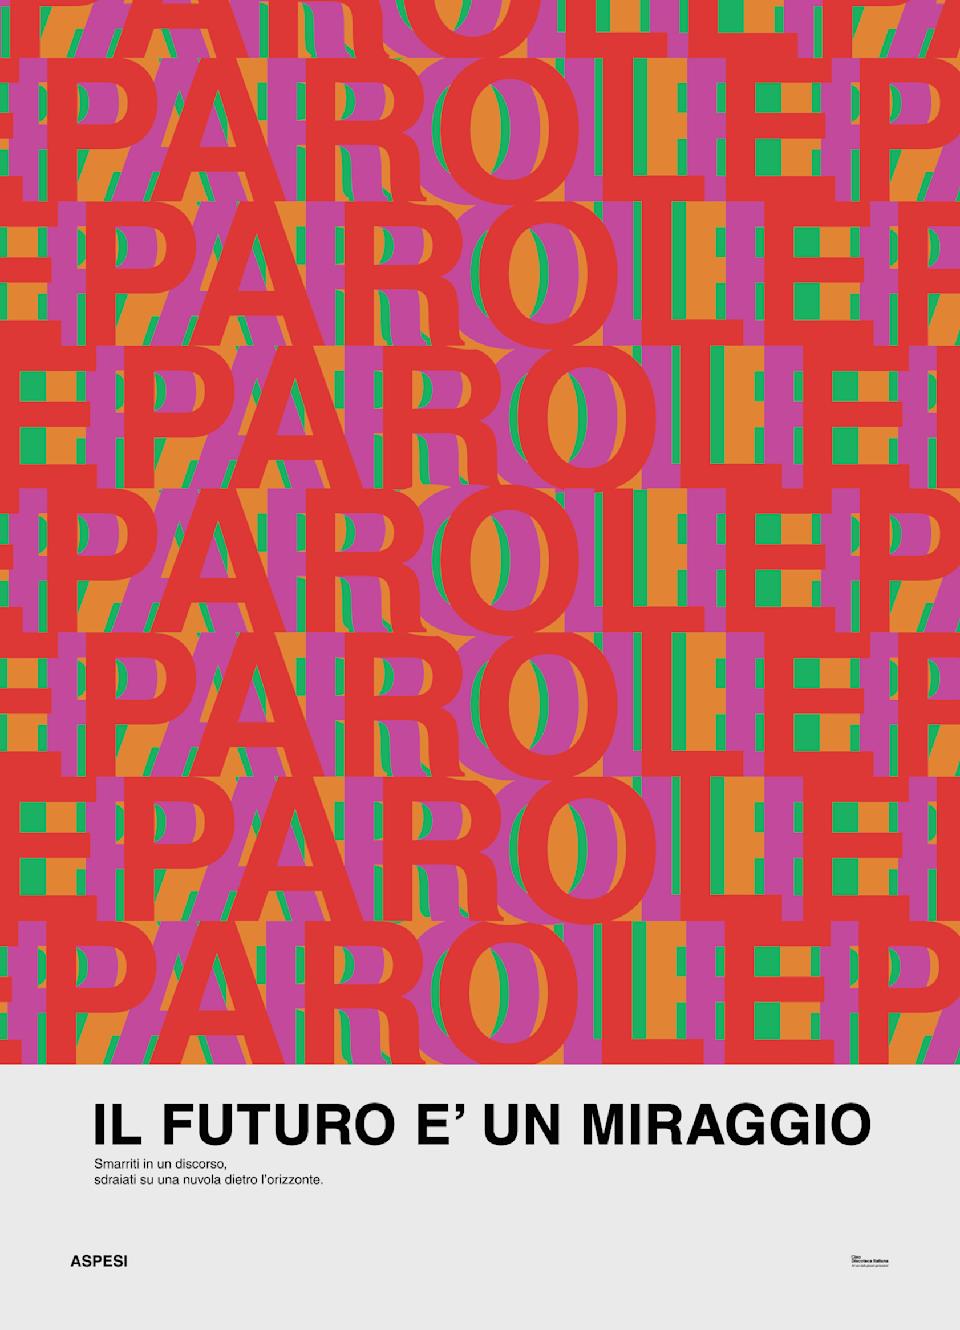 The Apses x Ciao Discoteca Italiana “Il futuro è un miraggio” poster. - Credit: Courtesy image